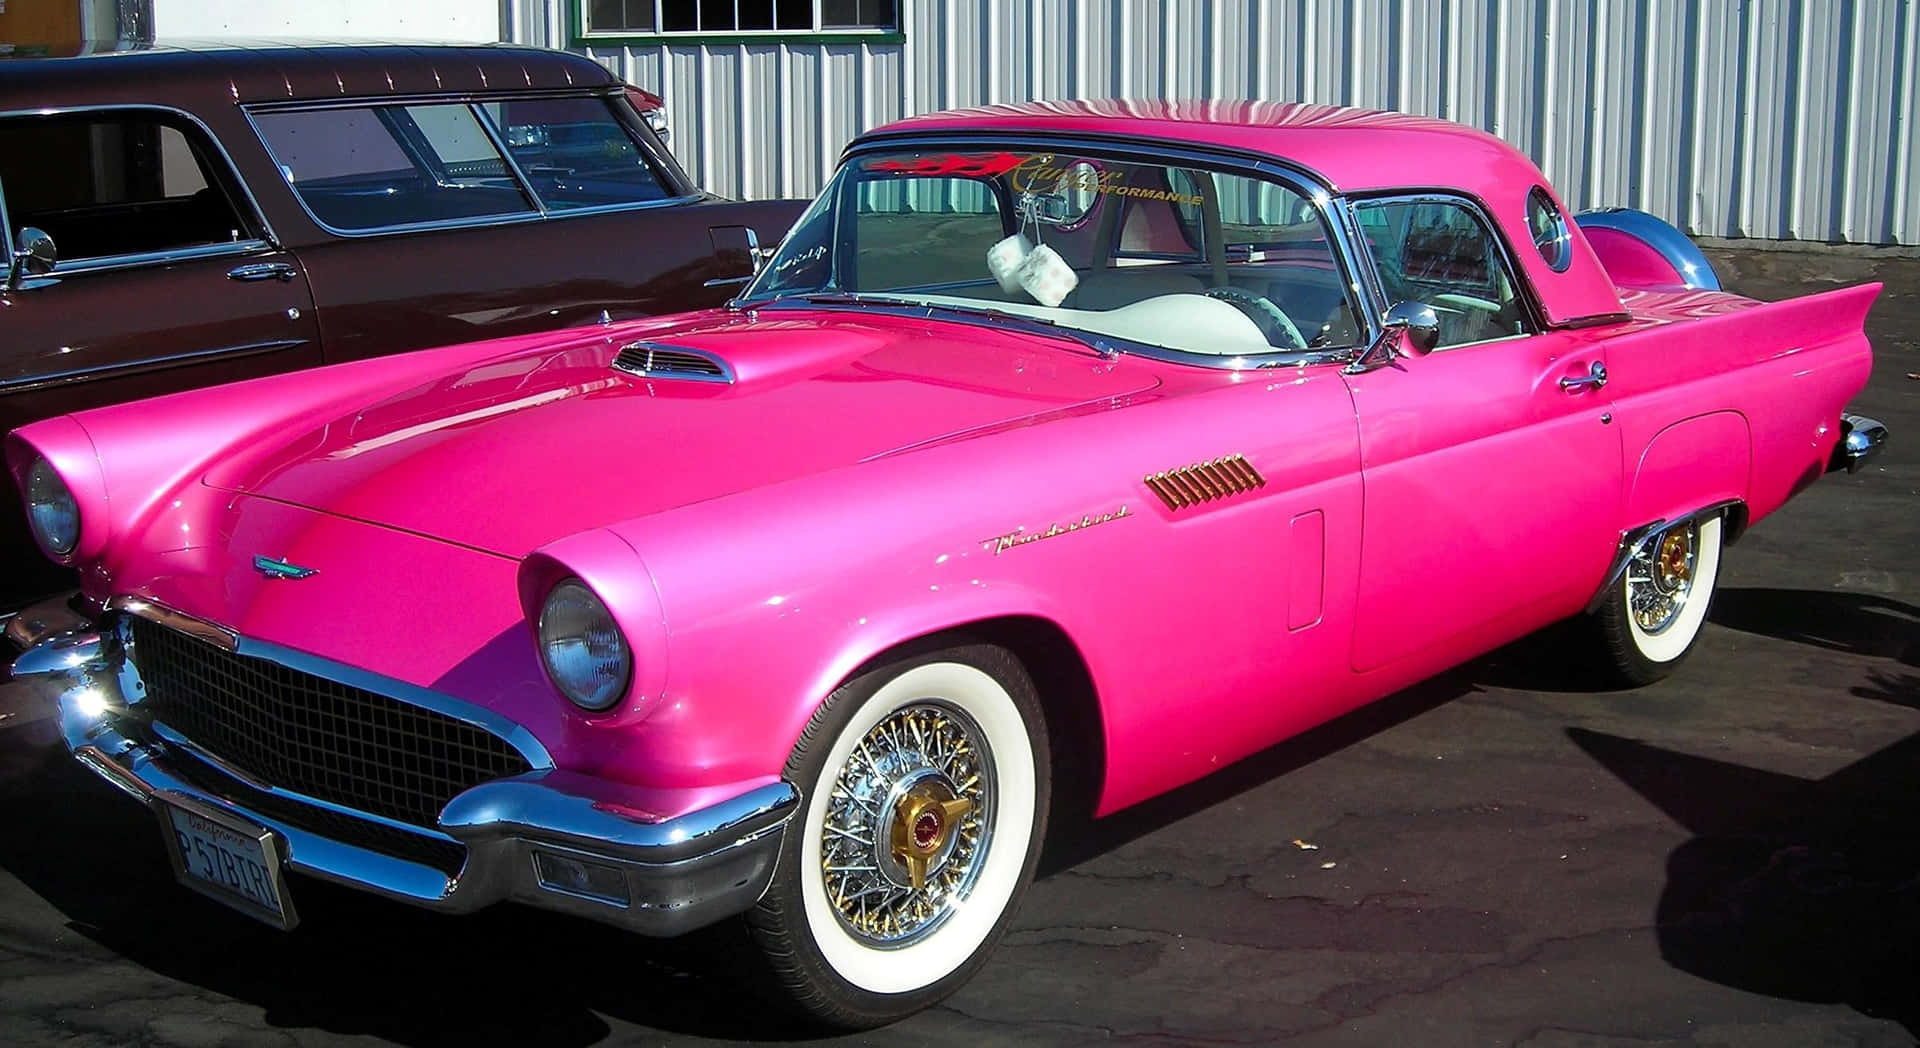 En smuk lyserød vintagebil parkeret i en solrig mark. Wallpaper